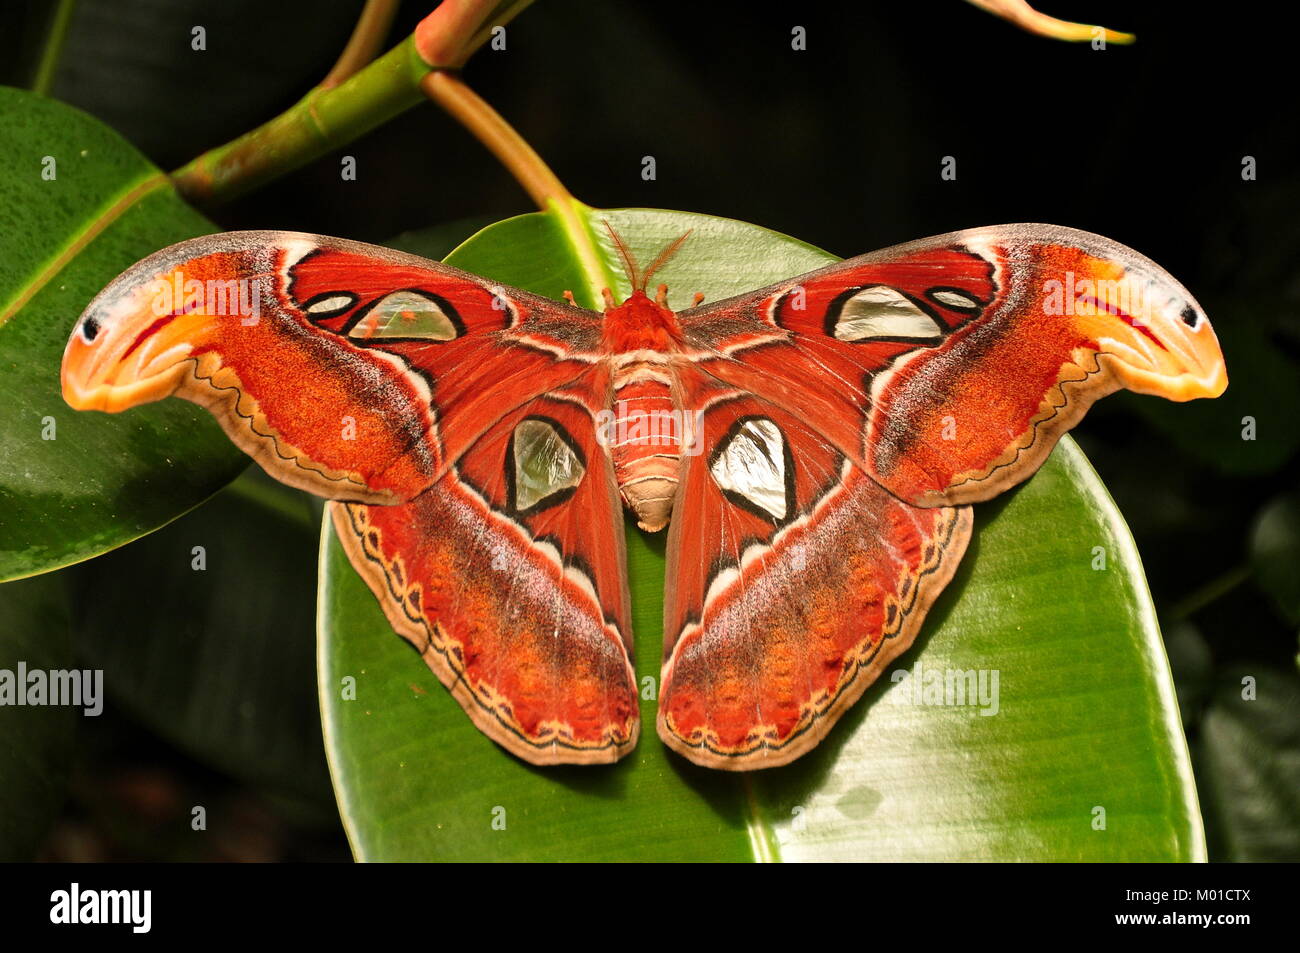 Die weltgrösste Motte der Atlas moth sitzt auf einem gummibaum Blatt in den Gärten. Stockfoto